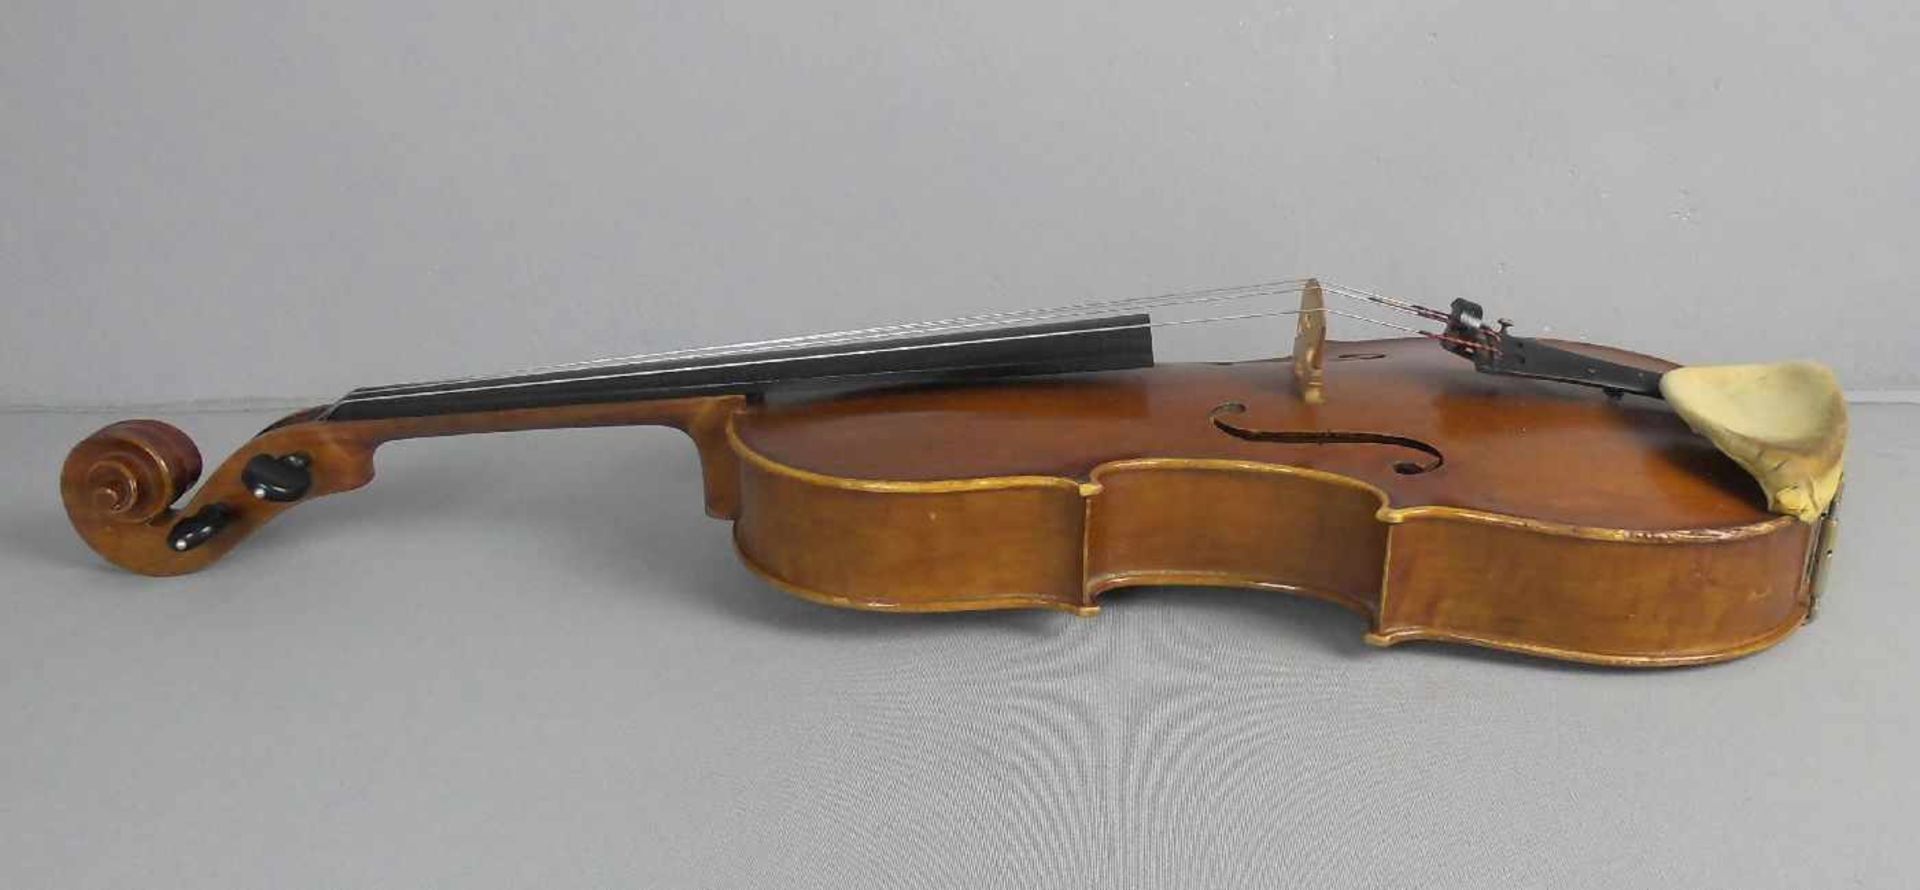 BRATSCHE / VIOLA, Cremona / Italien, Meister / Geigenbauer Stefano Conia, Bratsche gefertigt 1985. - Bild 4 aus 17